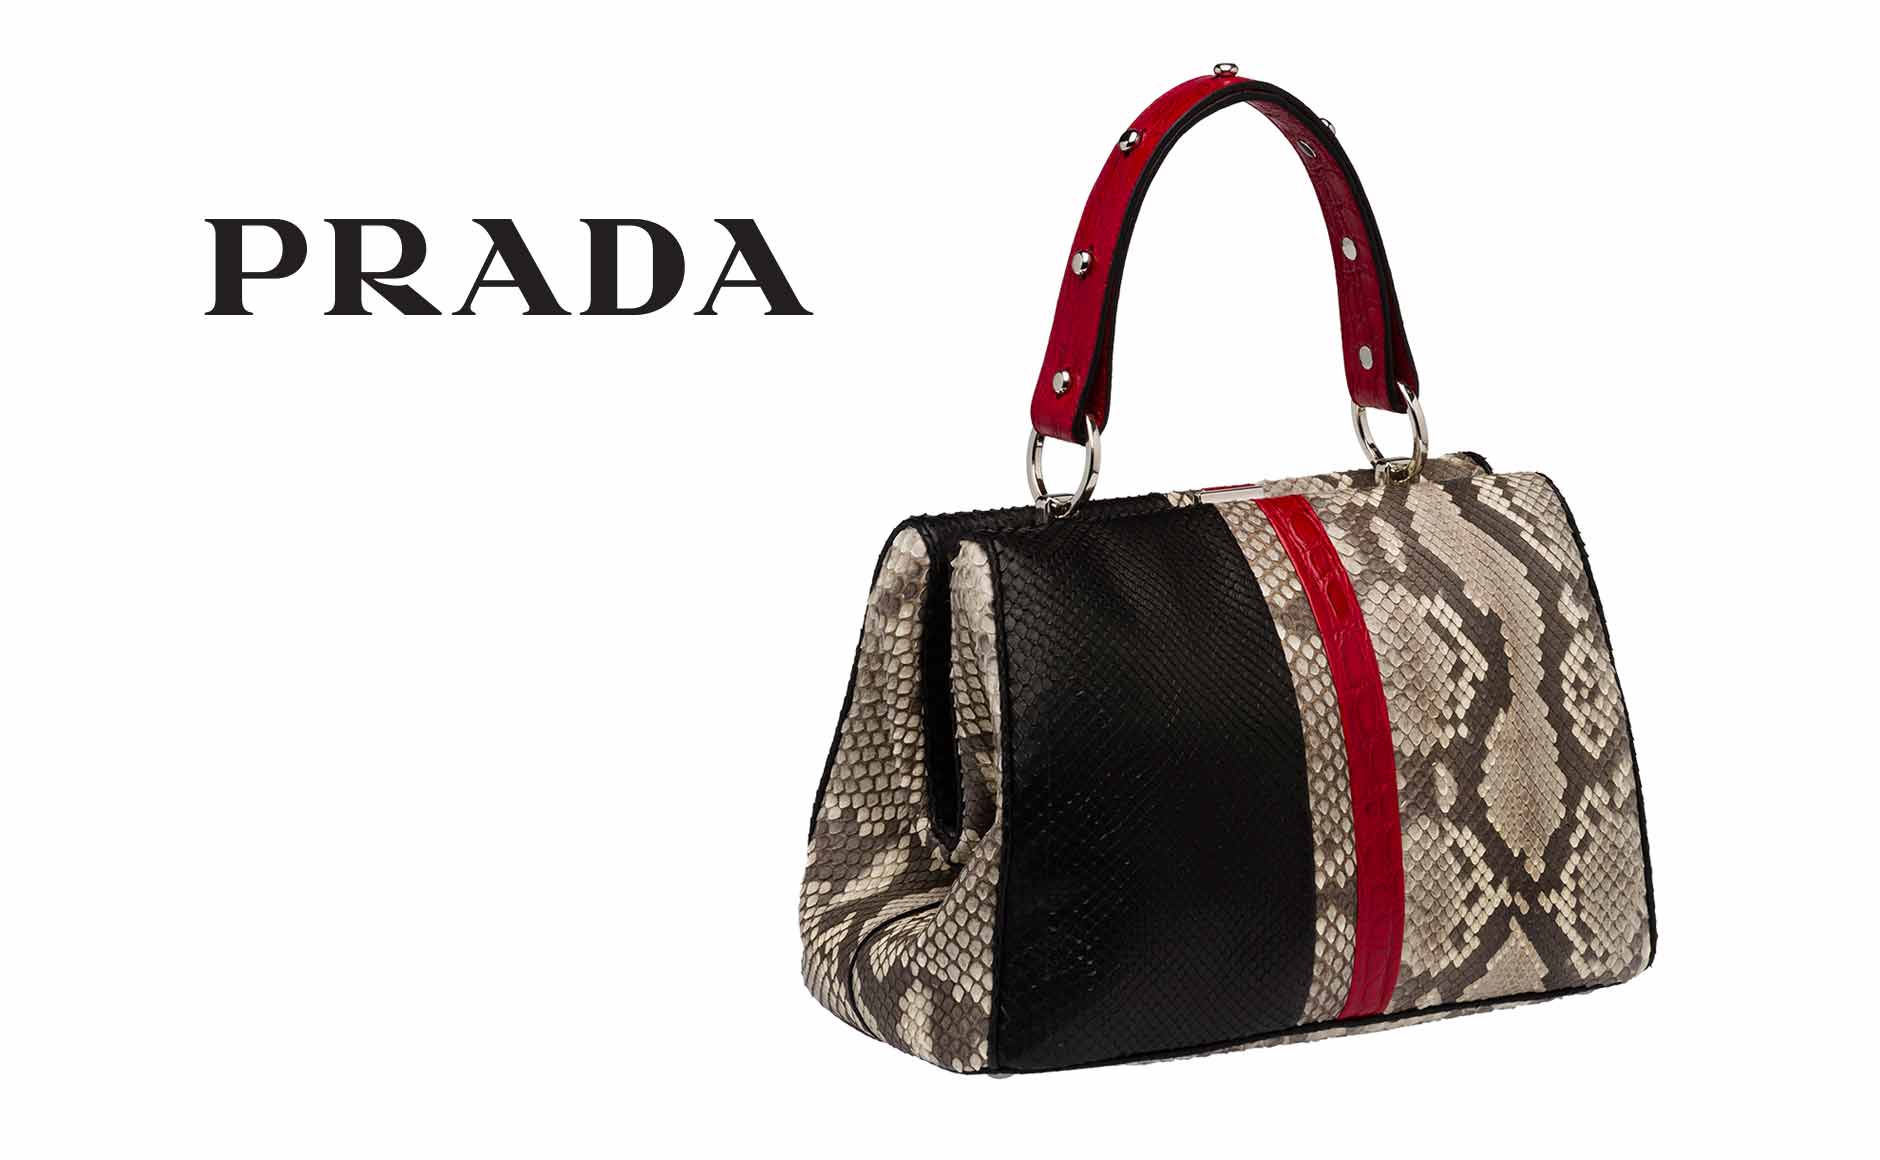 Prada Handbags, Clothing, \u0026amp; Accessories at Neiman Marcus  